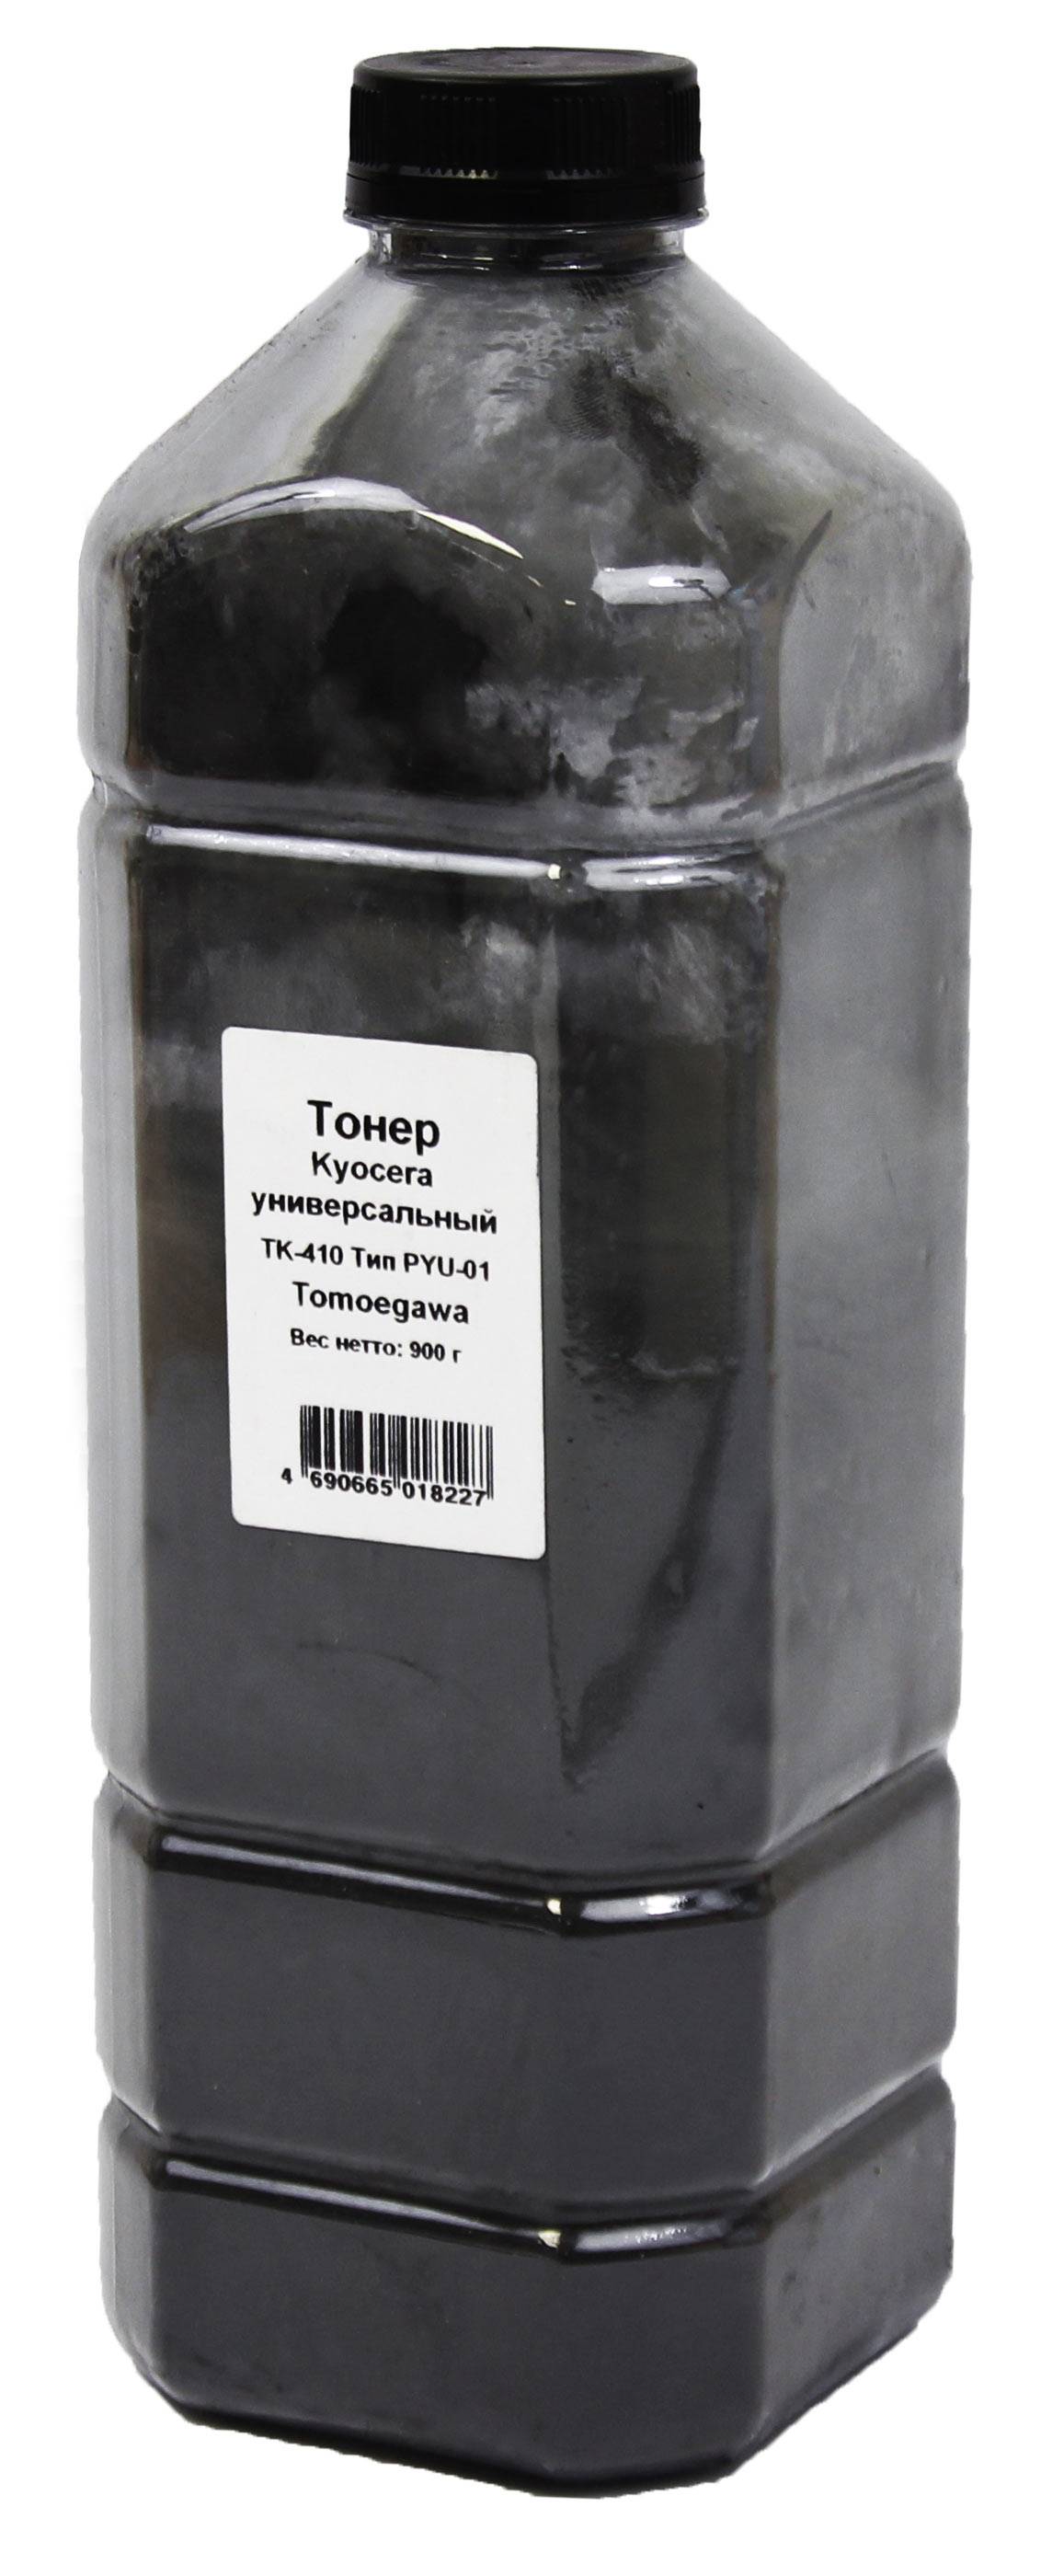 Тонер Kyocera Универсальный ТК-410 (Tomoegawa) Тип PYU-01, 900 г, канистра